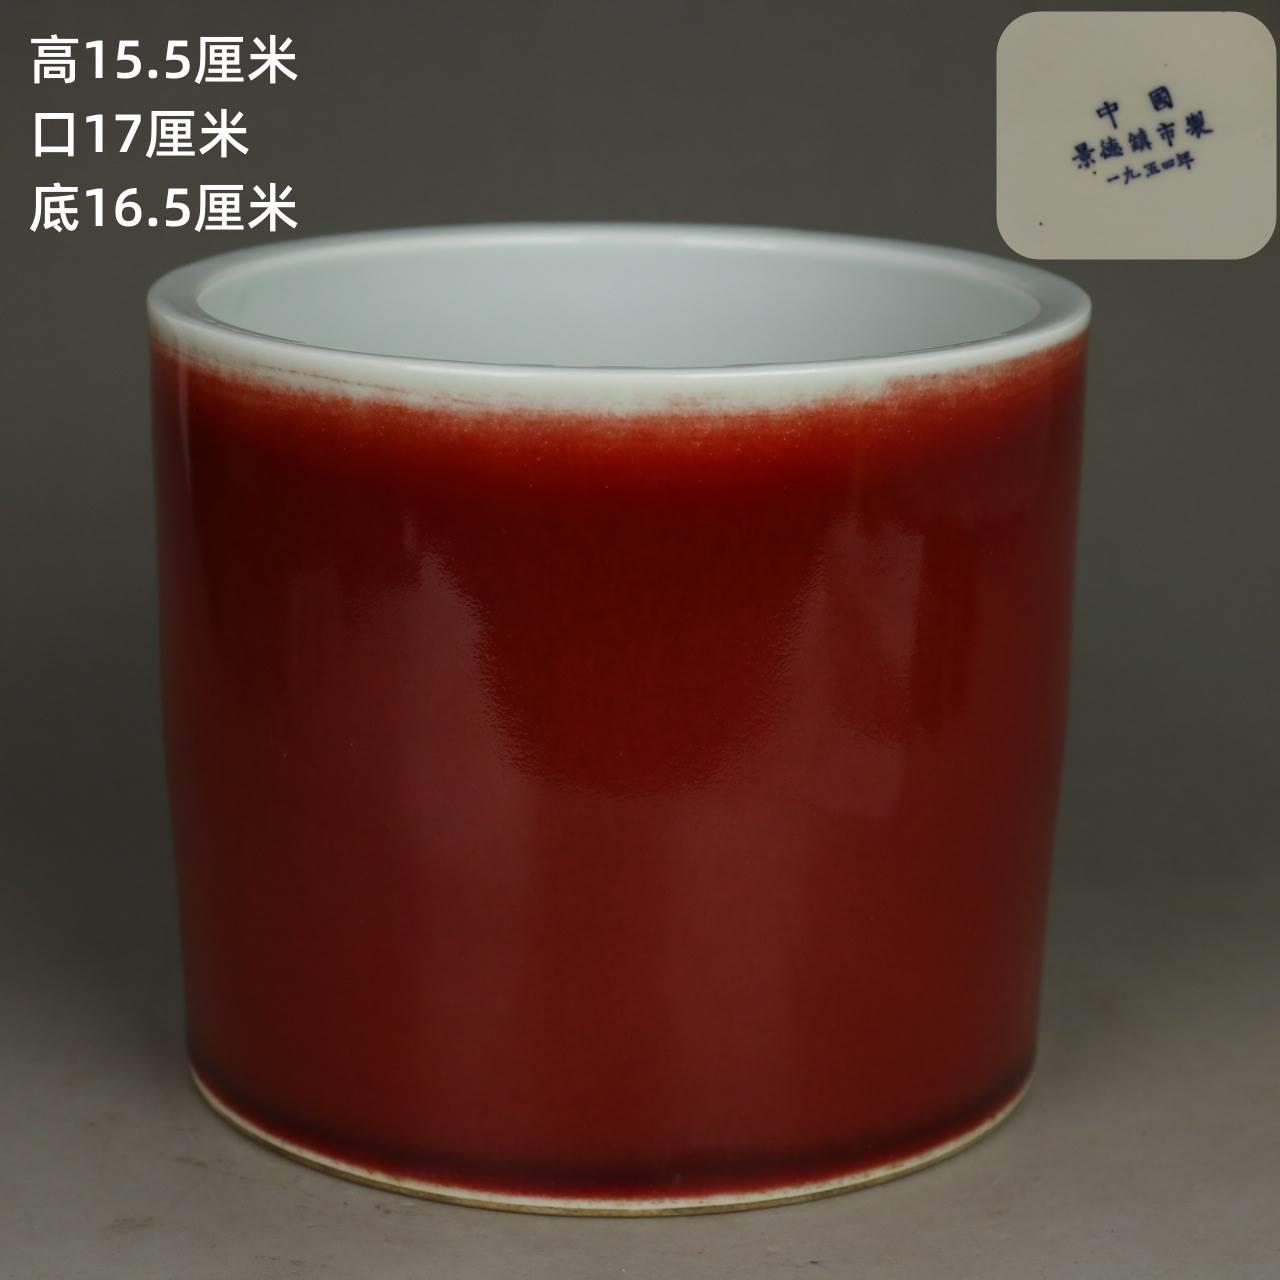 50年代景德镇霁红釉大笔筒单色釉红色老物件旧瓷器收藏瓷老古董店